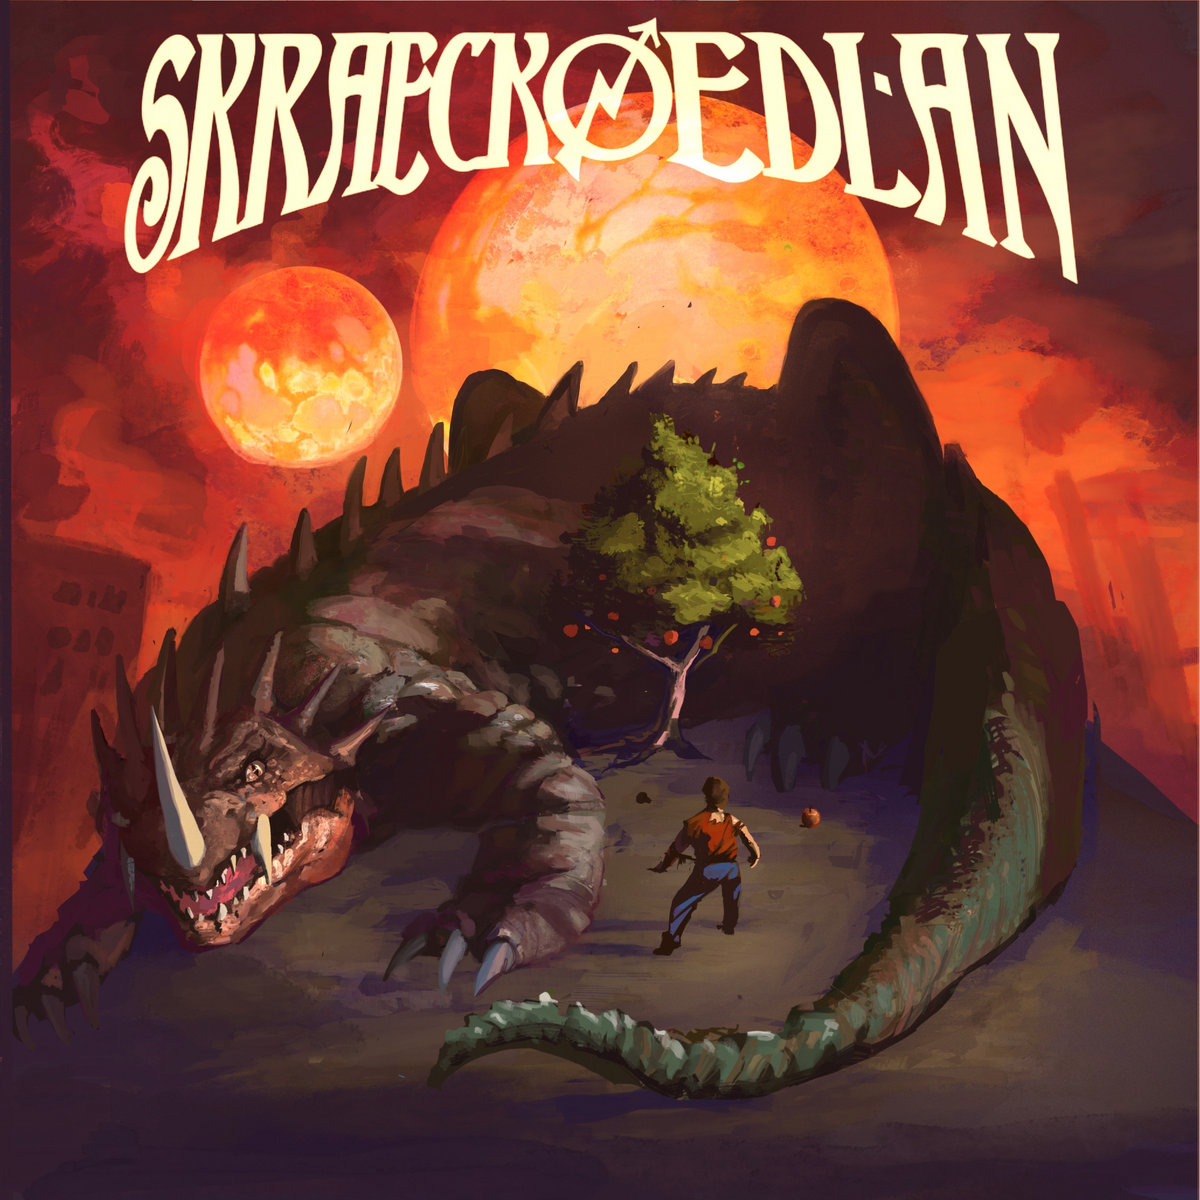 Skraeckoedlan - Äppelträdet (10th Anniversary Edition)(Clear Vinyl) - LP